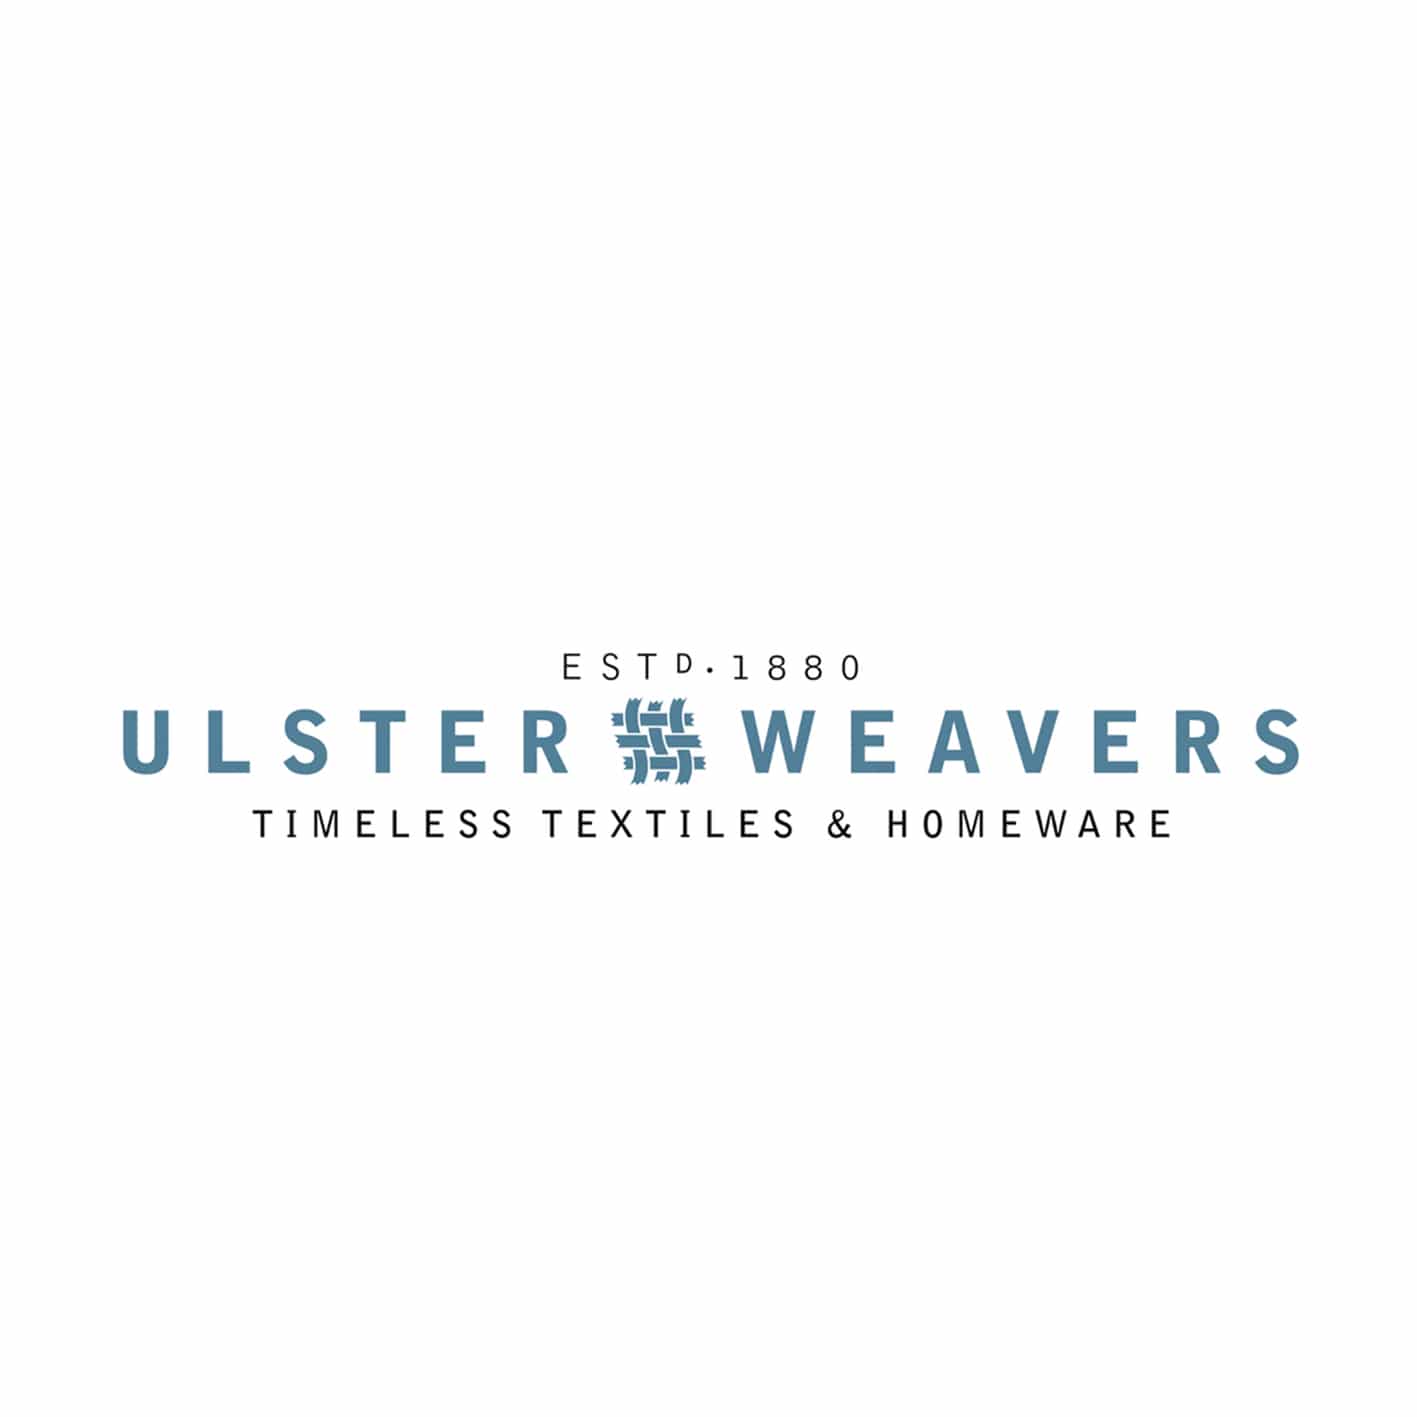 Ulster Weavers